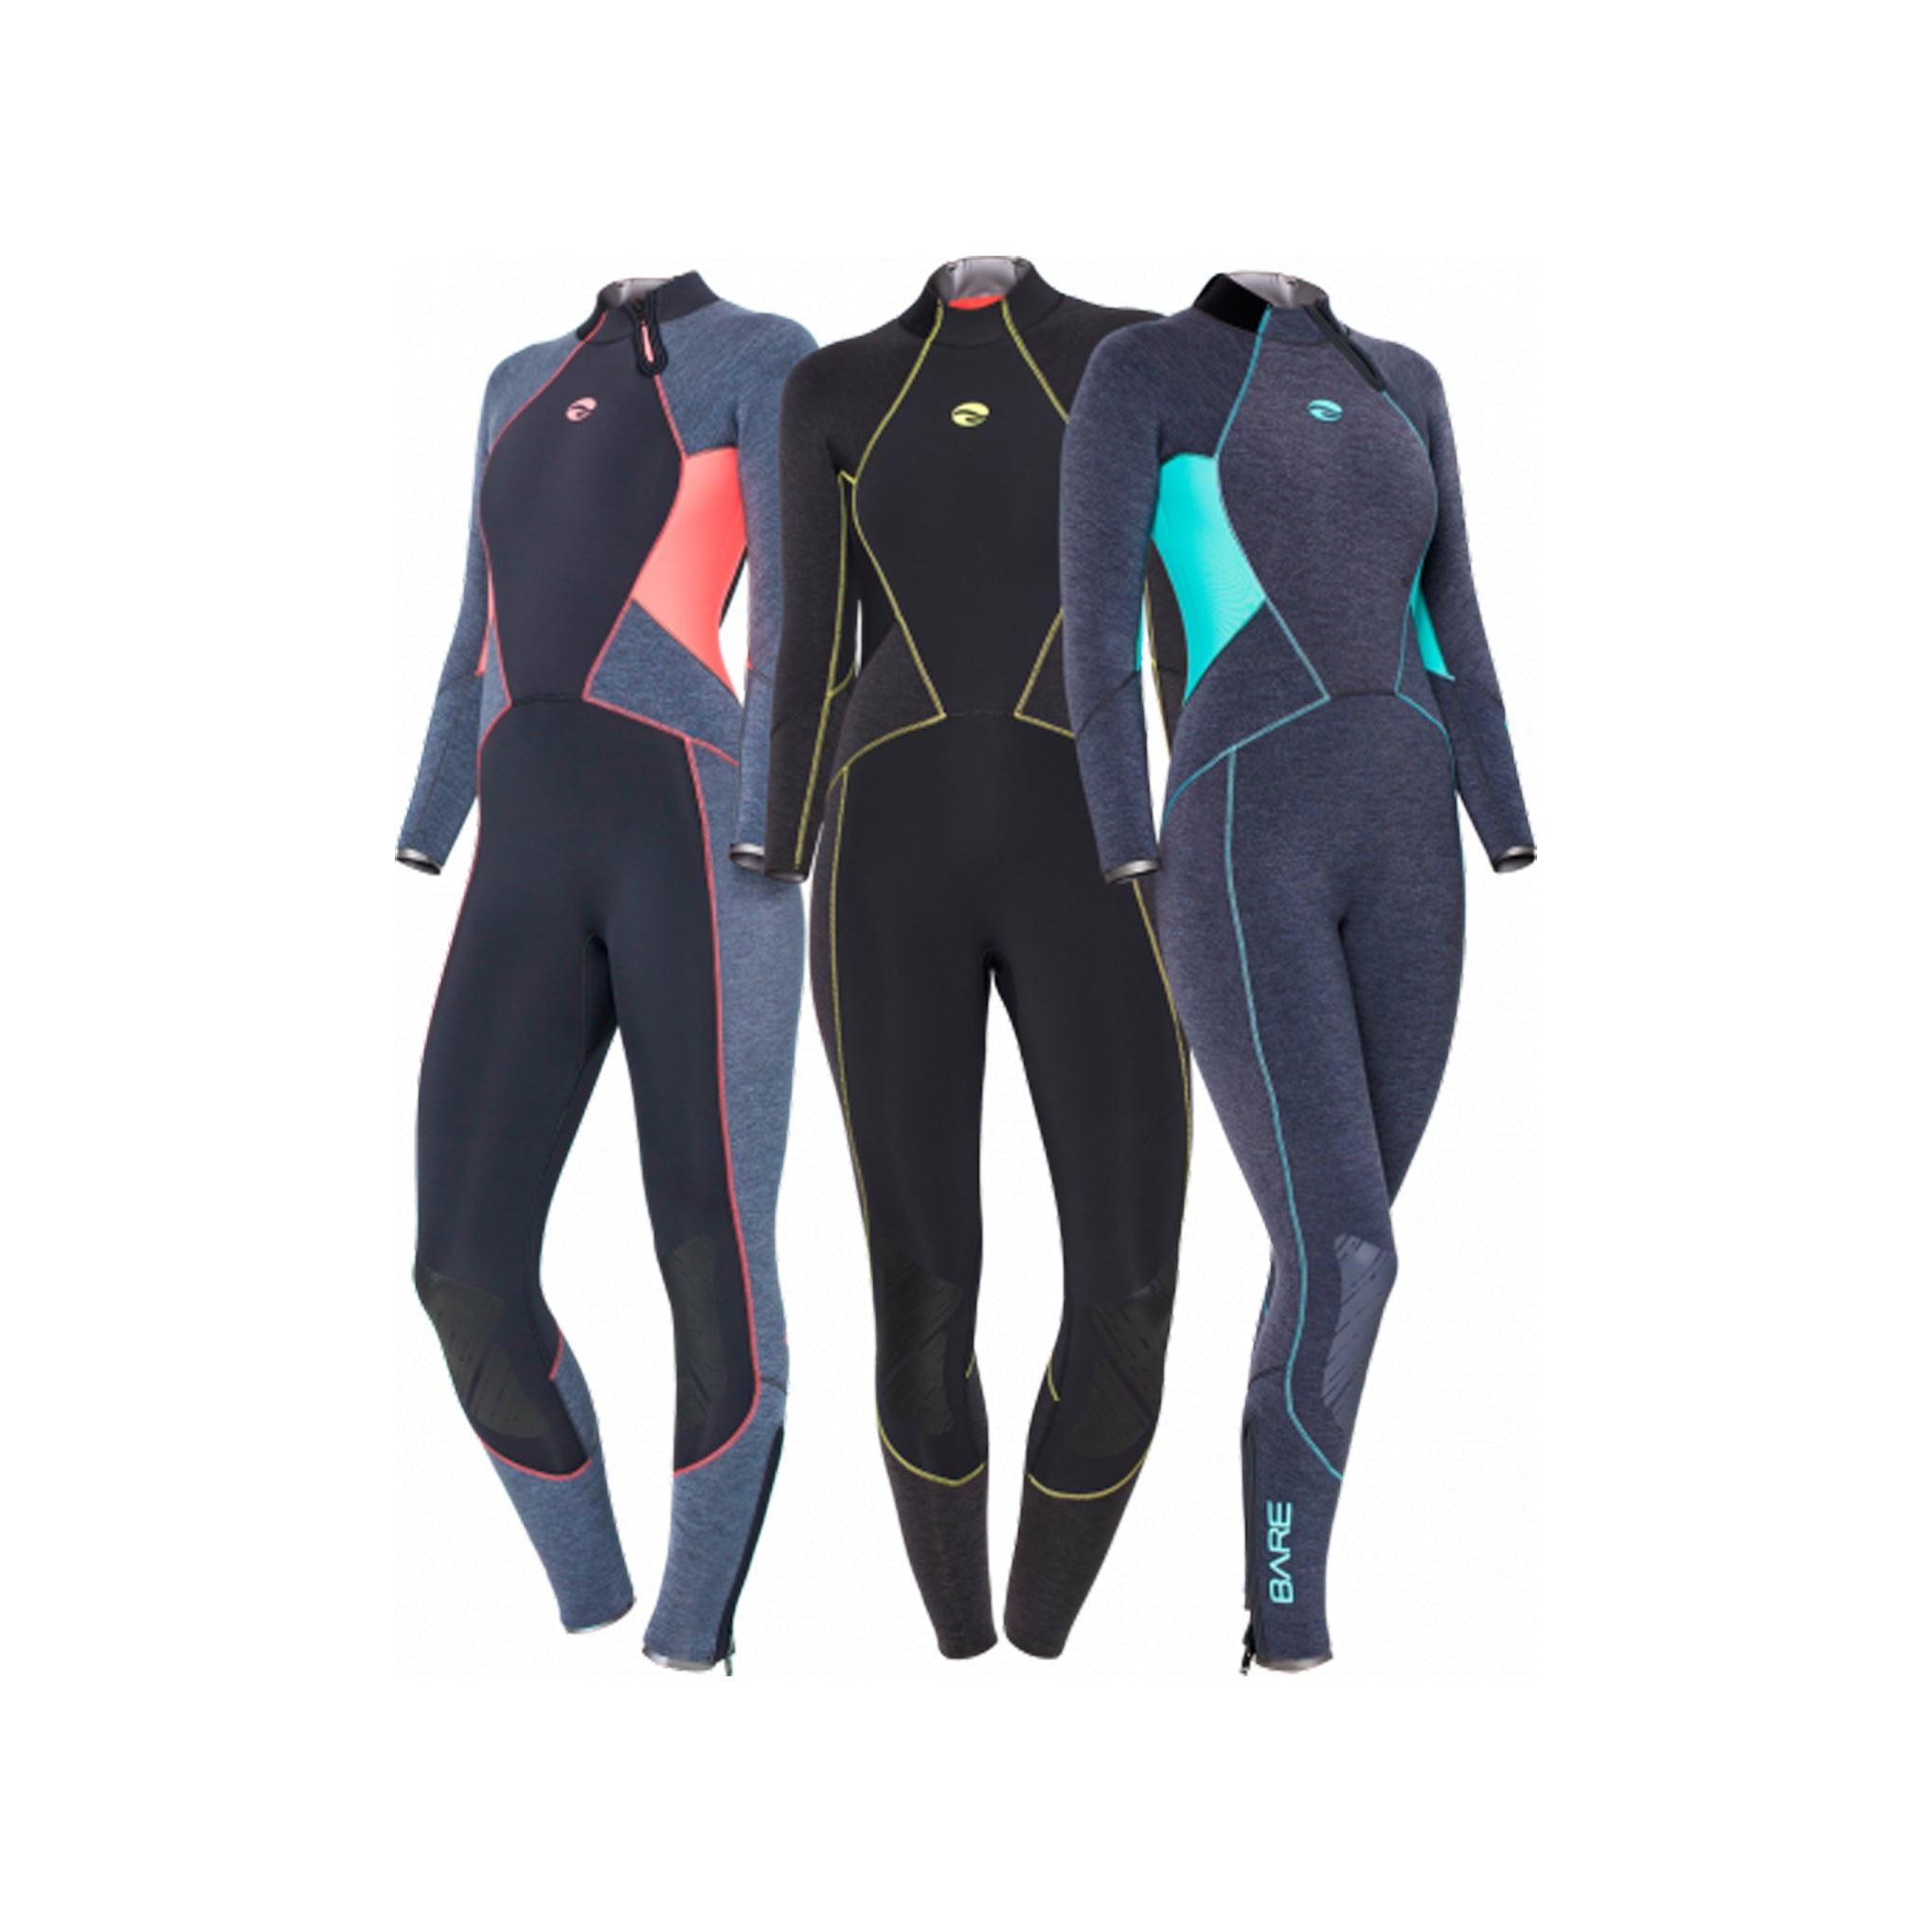 7mm Evoke Full - Women's-Wetsuits-Snorkeling, diver, sharkskin, scuba diving hk, warm protection, sharkskin, dive wear, bare wetsuit, aeroskin wetsuit, 浮潛